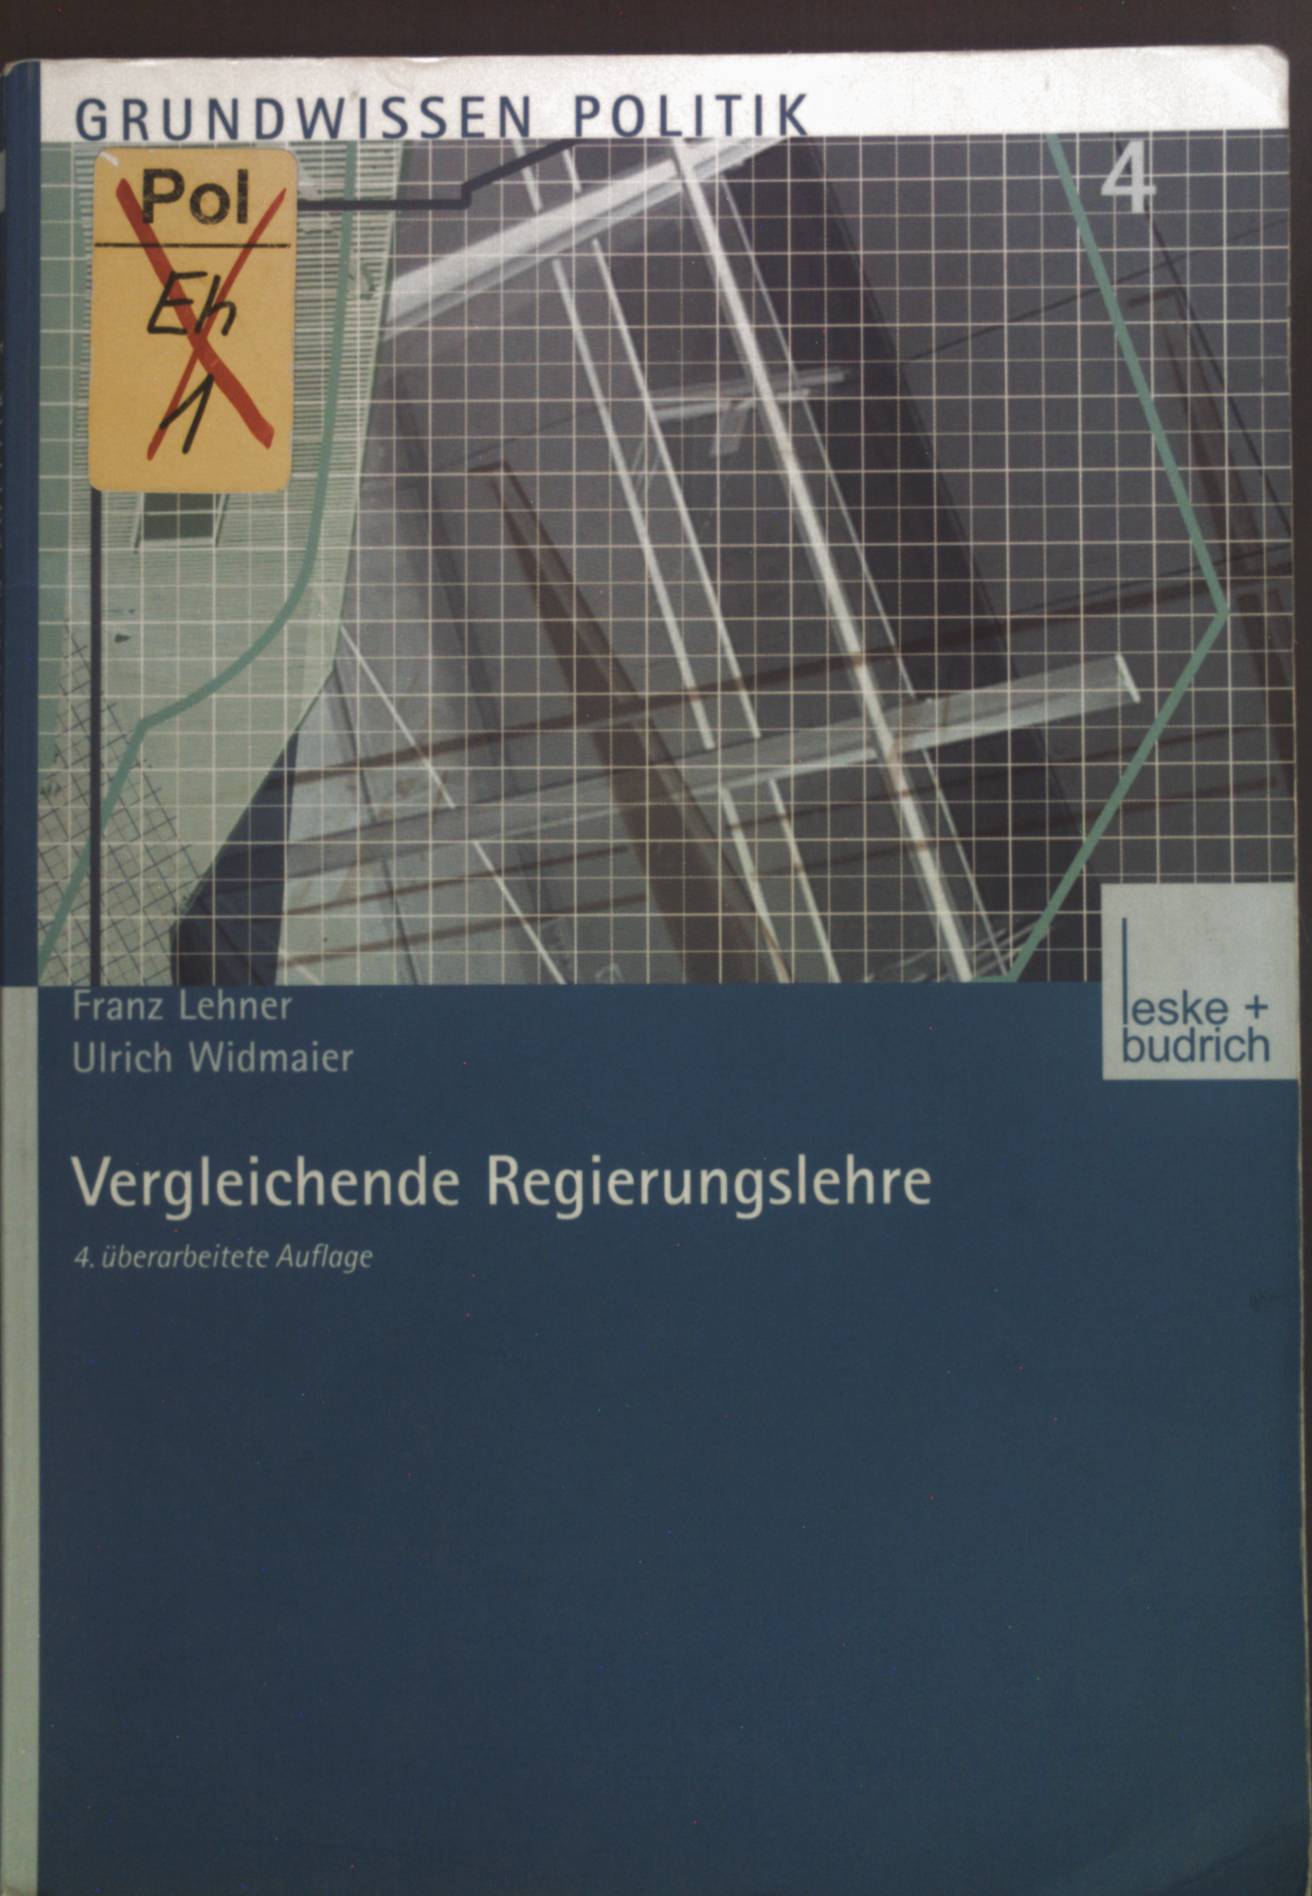 Vergleichende Regierungslehre. Grundwissen Politik ; Bd. 4 - Lehner, Franz und Ulrich Widmaier